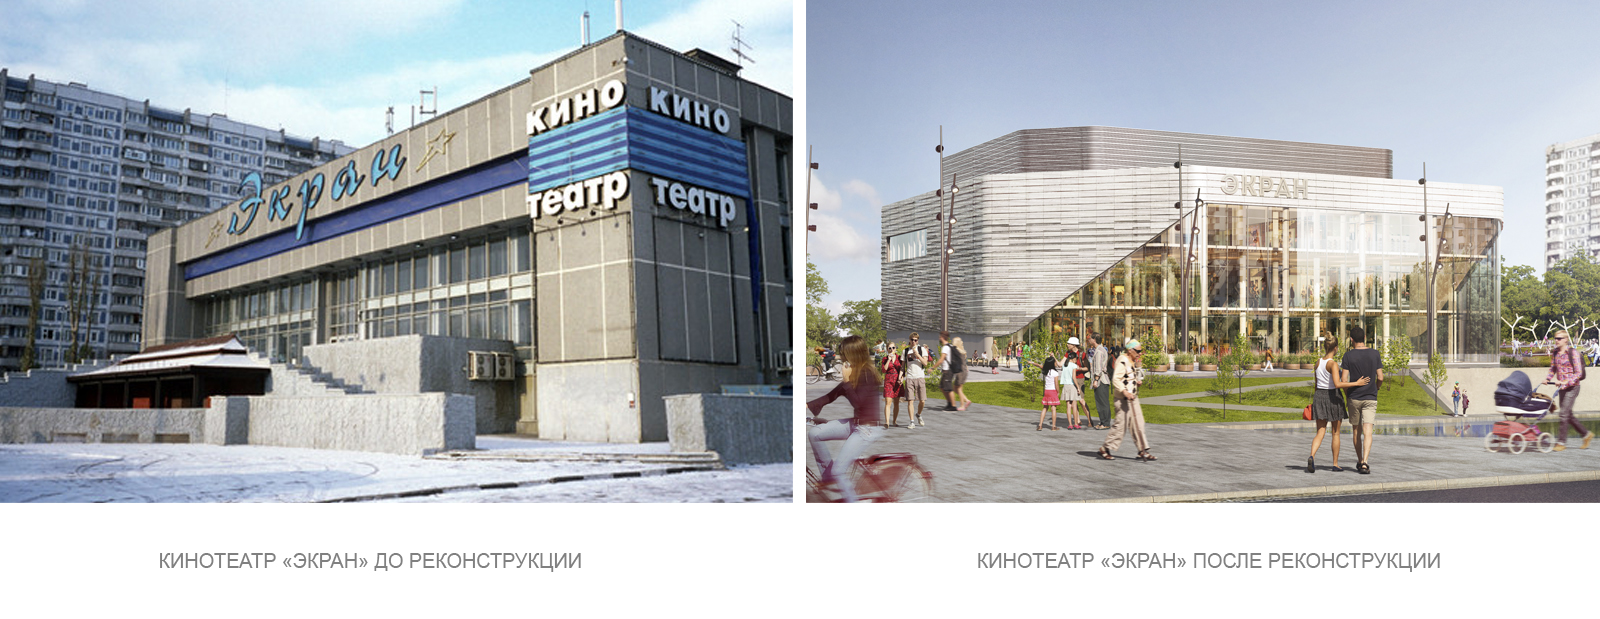 Первый объект программы реновации советских кинотеатров откроется в Москве весной 2019 года